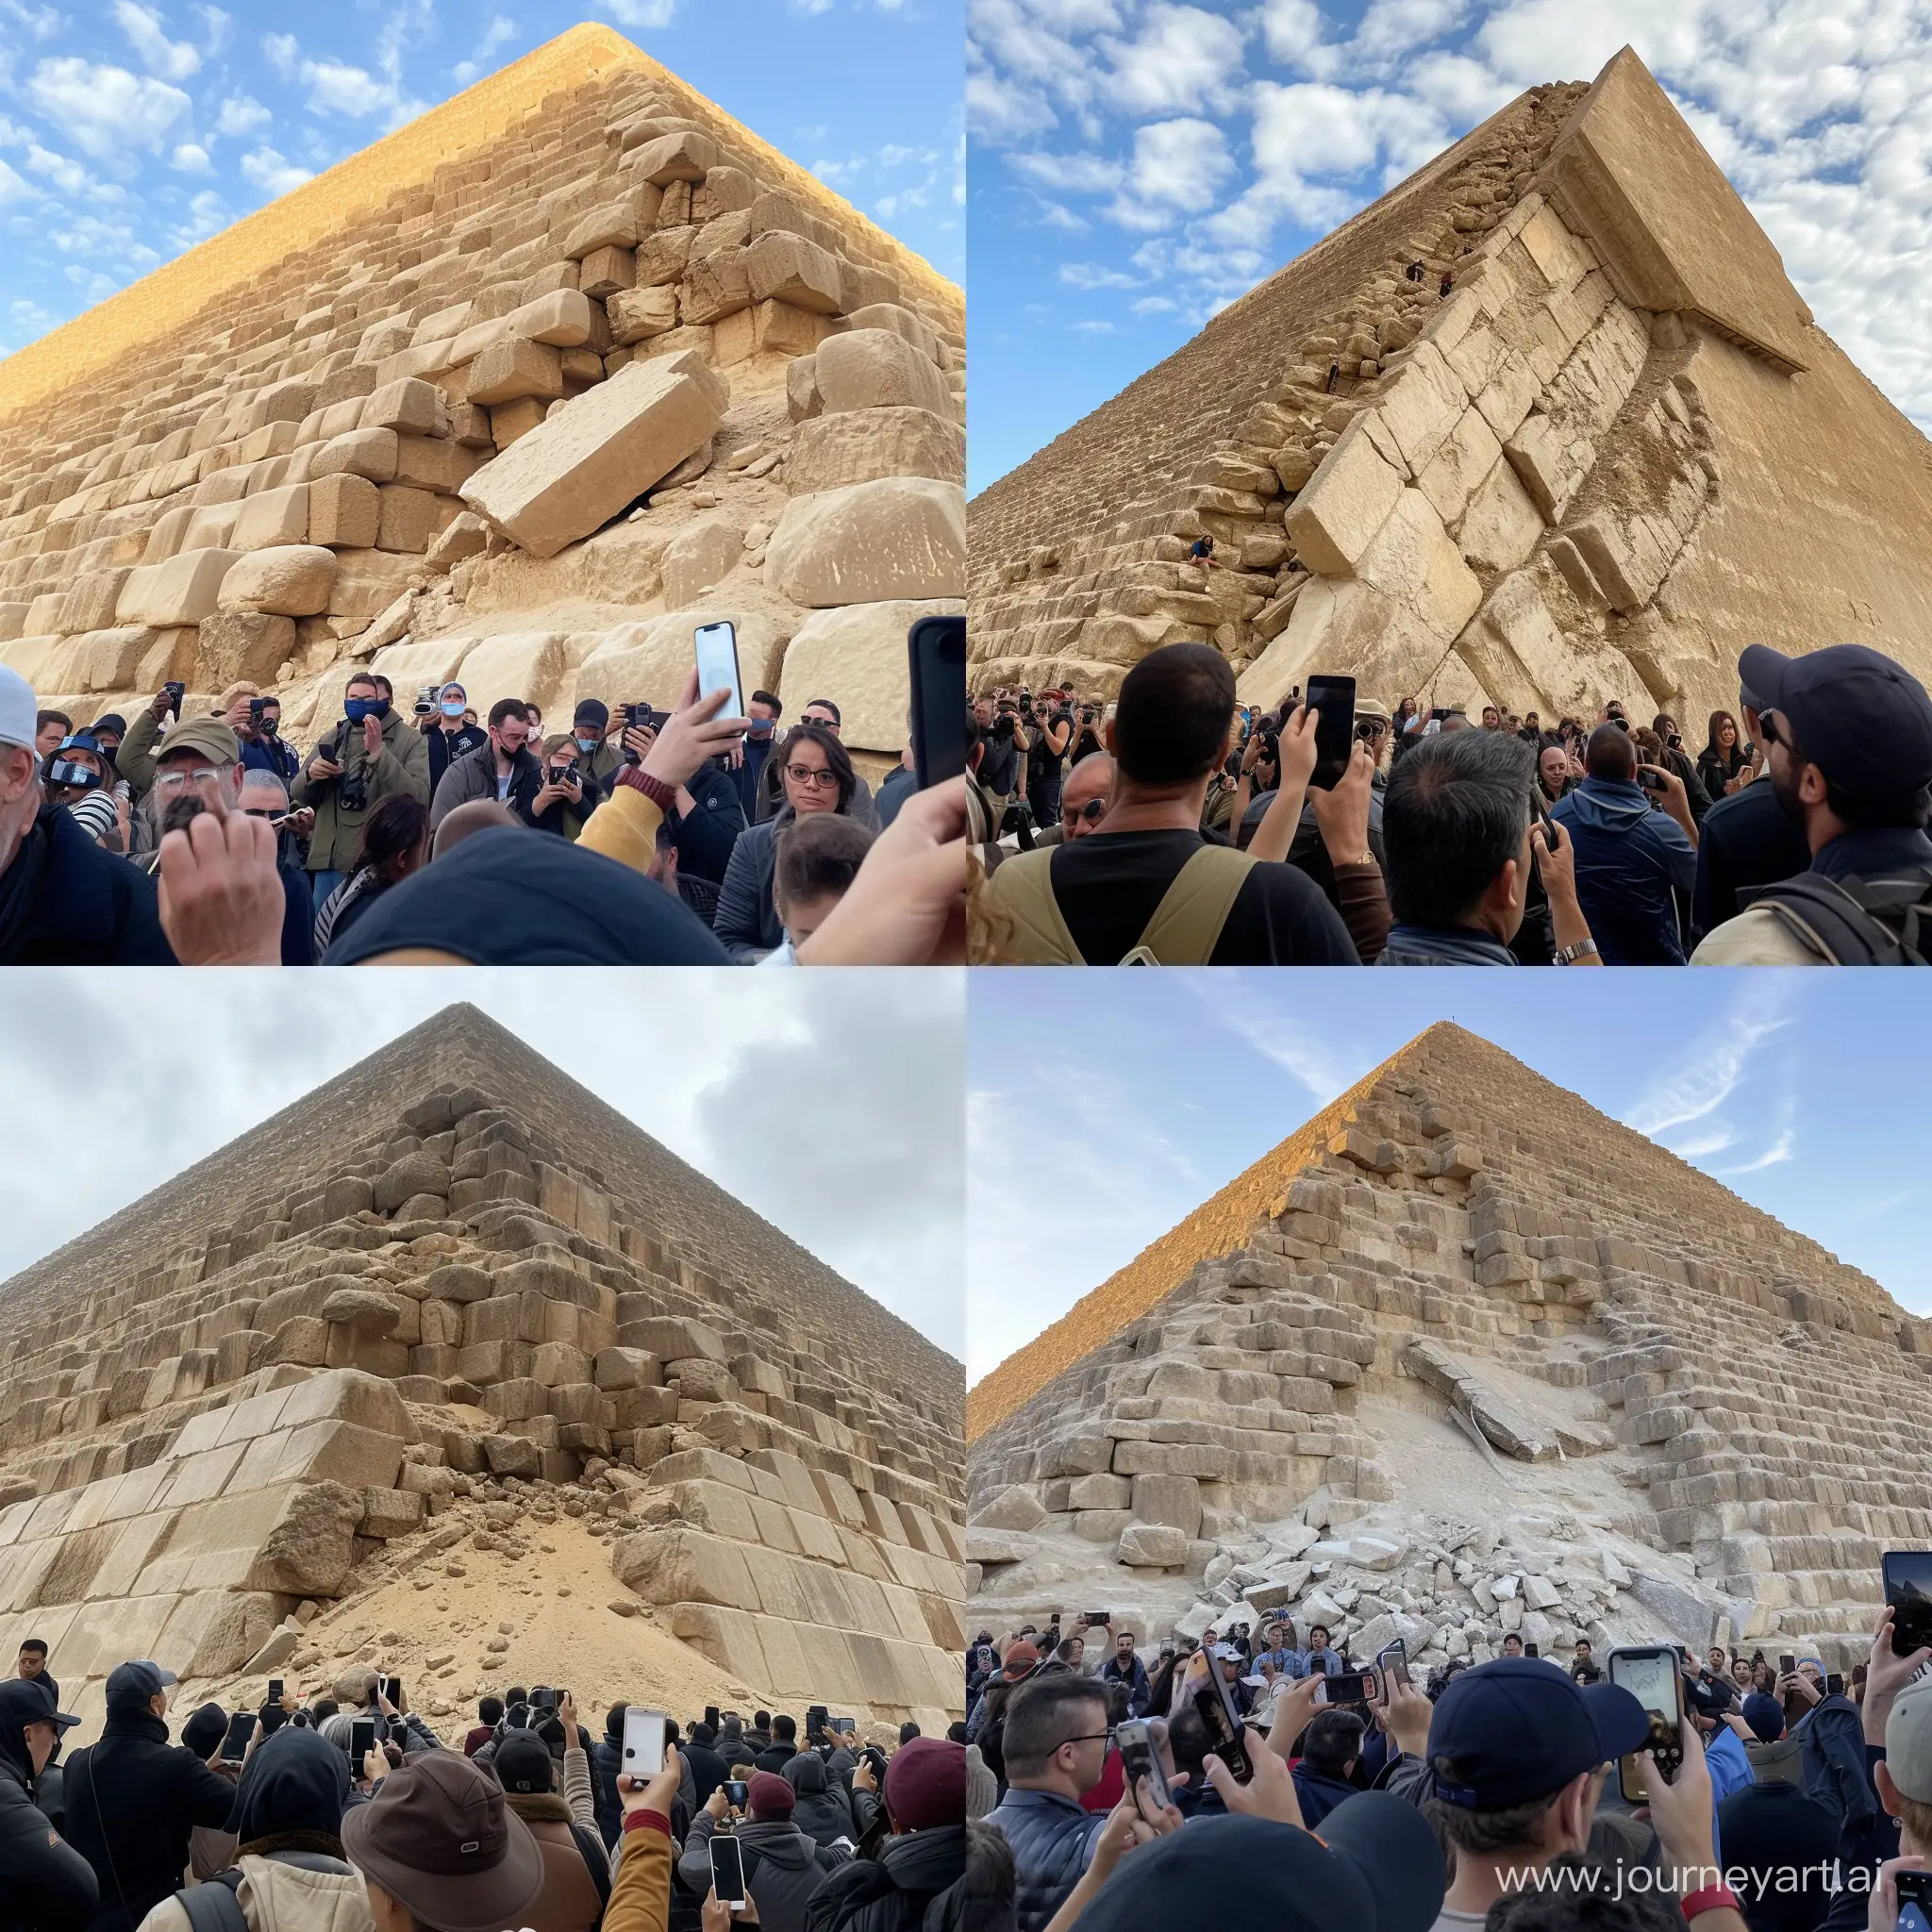 Часть пирамиды хеопса отвалилась и валяется внизу, люди стоят в шоке и все снимают это на телефон, реалистично